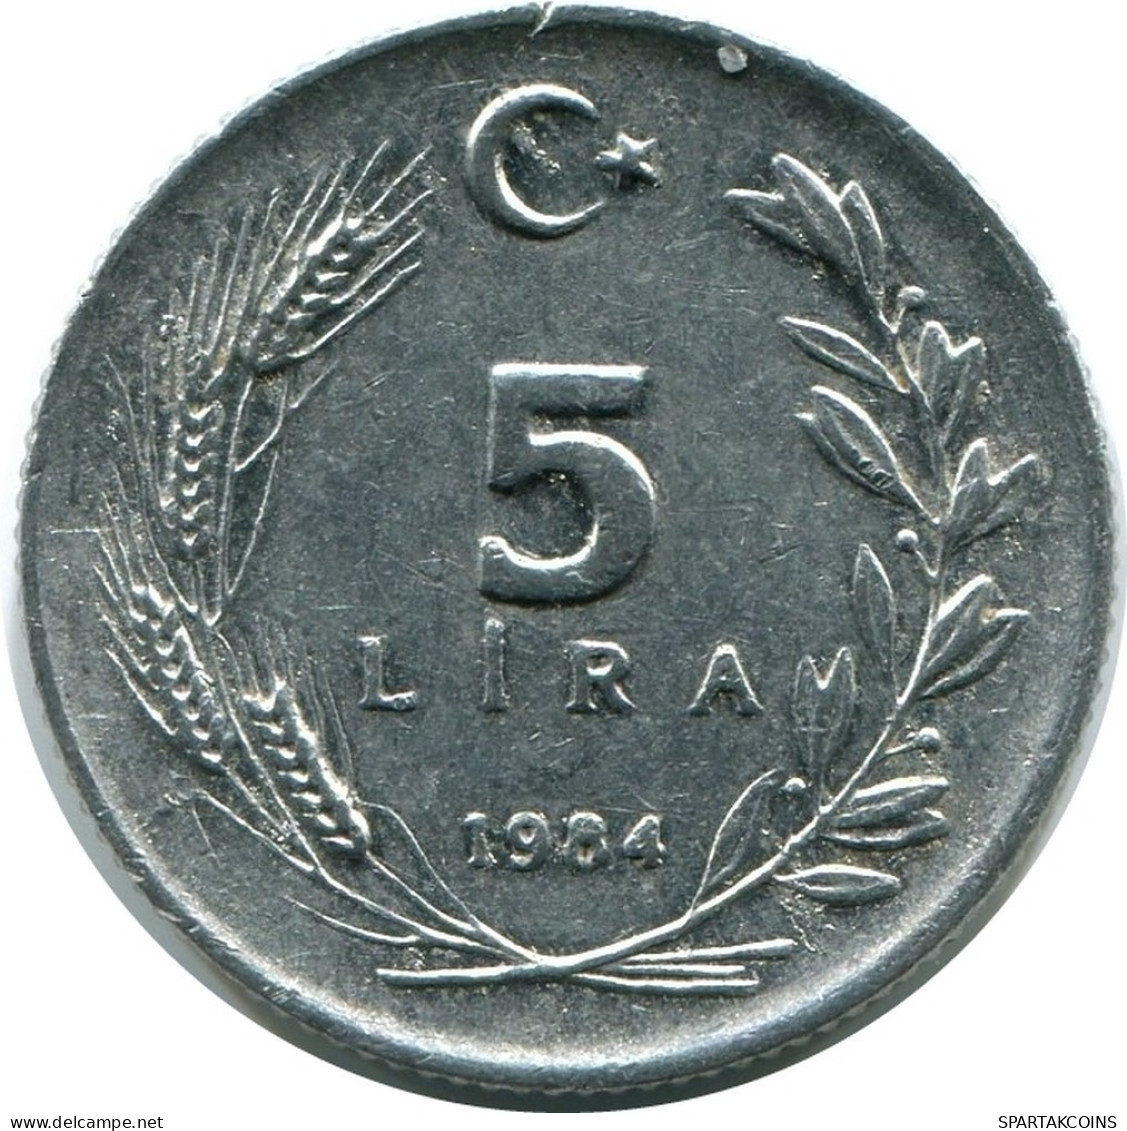 5 LIRA 1984 TÜRKEI TURKEY UNC Münze #M10289.D.A - Türkei